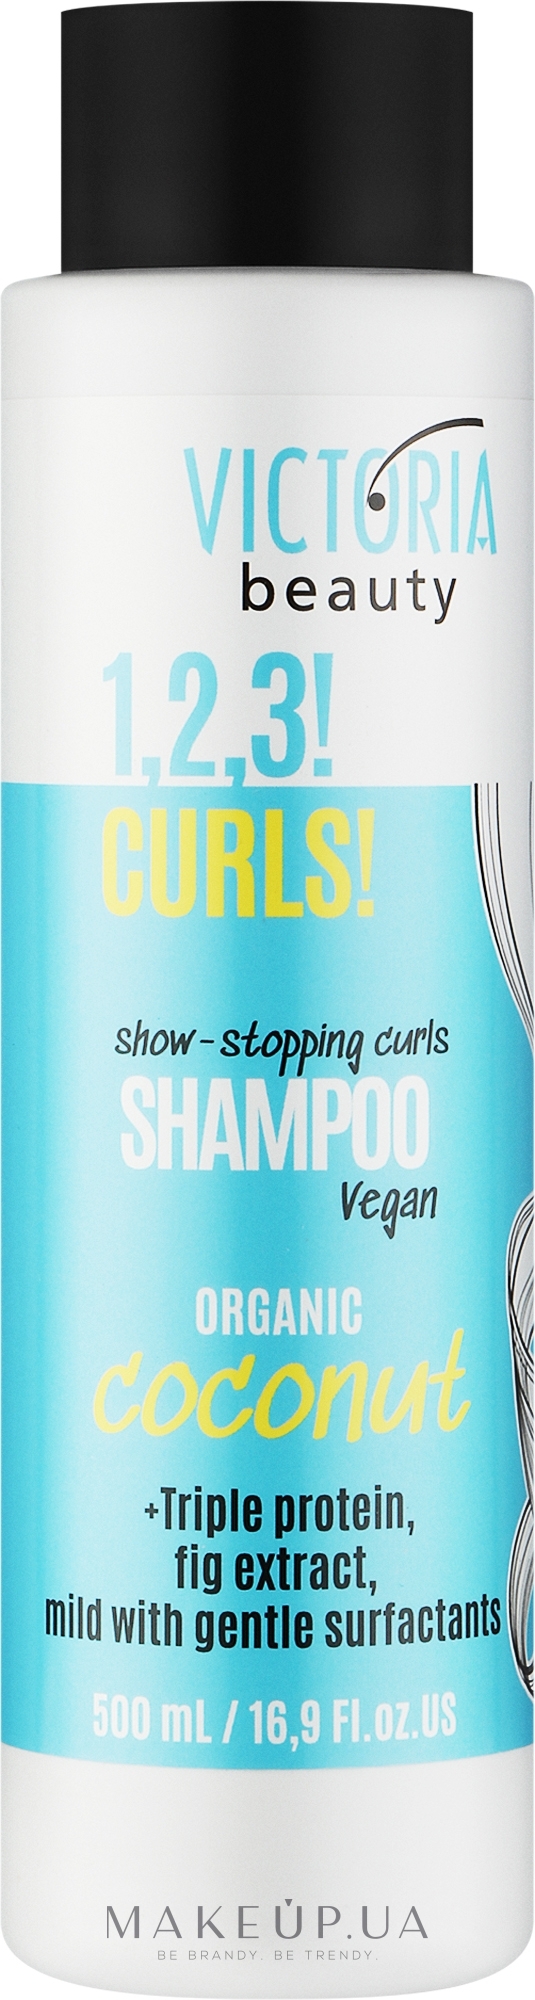 Шампунь для кучерявого волосся - Victoria Beauty 1,2,3! Curls! Shampoo — фото 500ml